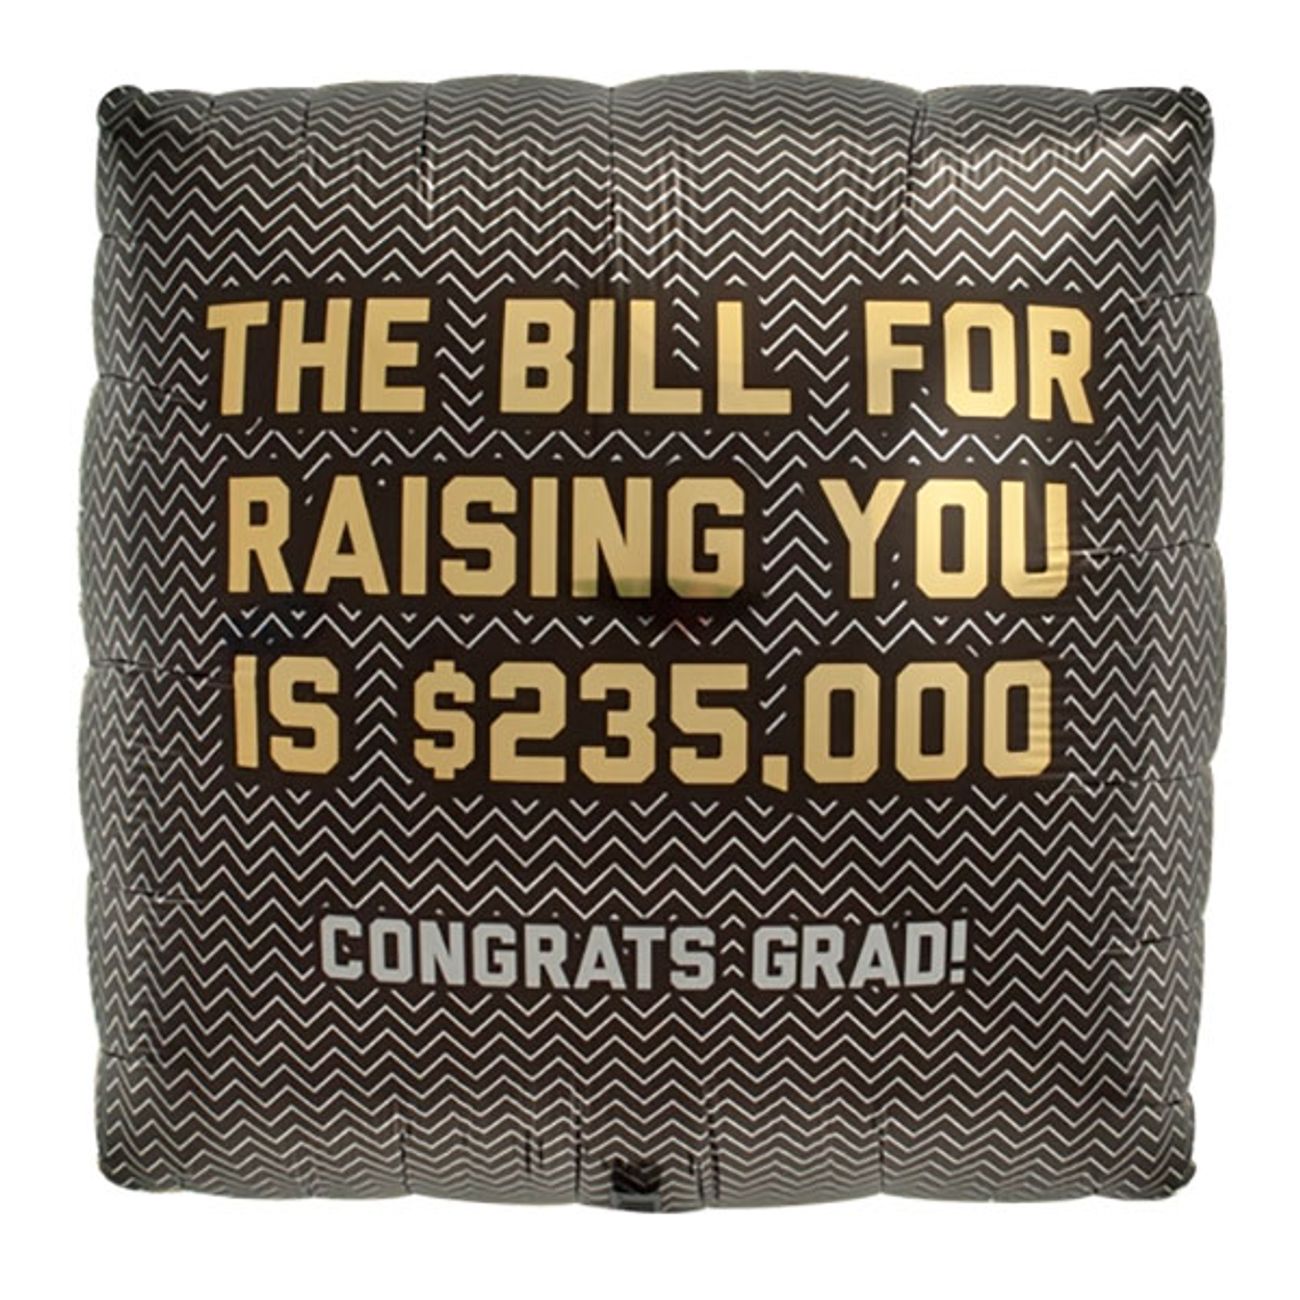 folieballong-congrats-grad-the-bill-for-raising-you-1